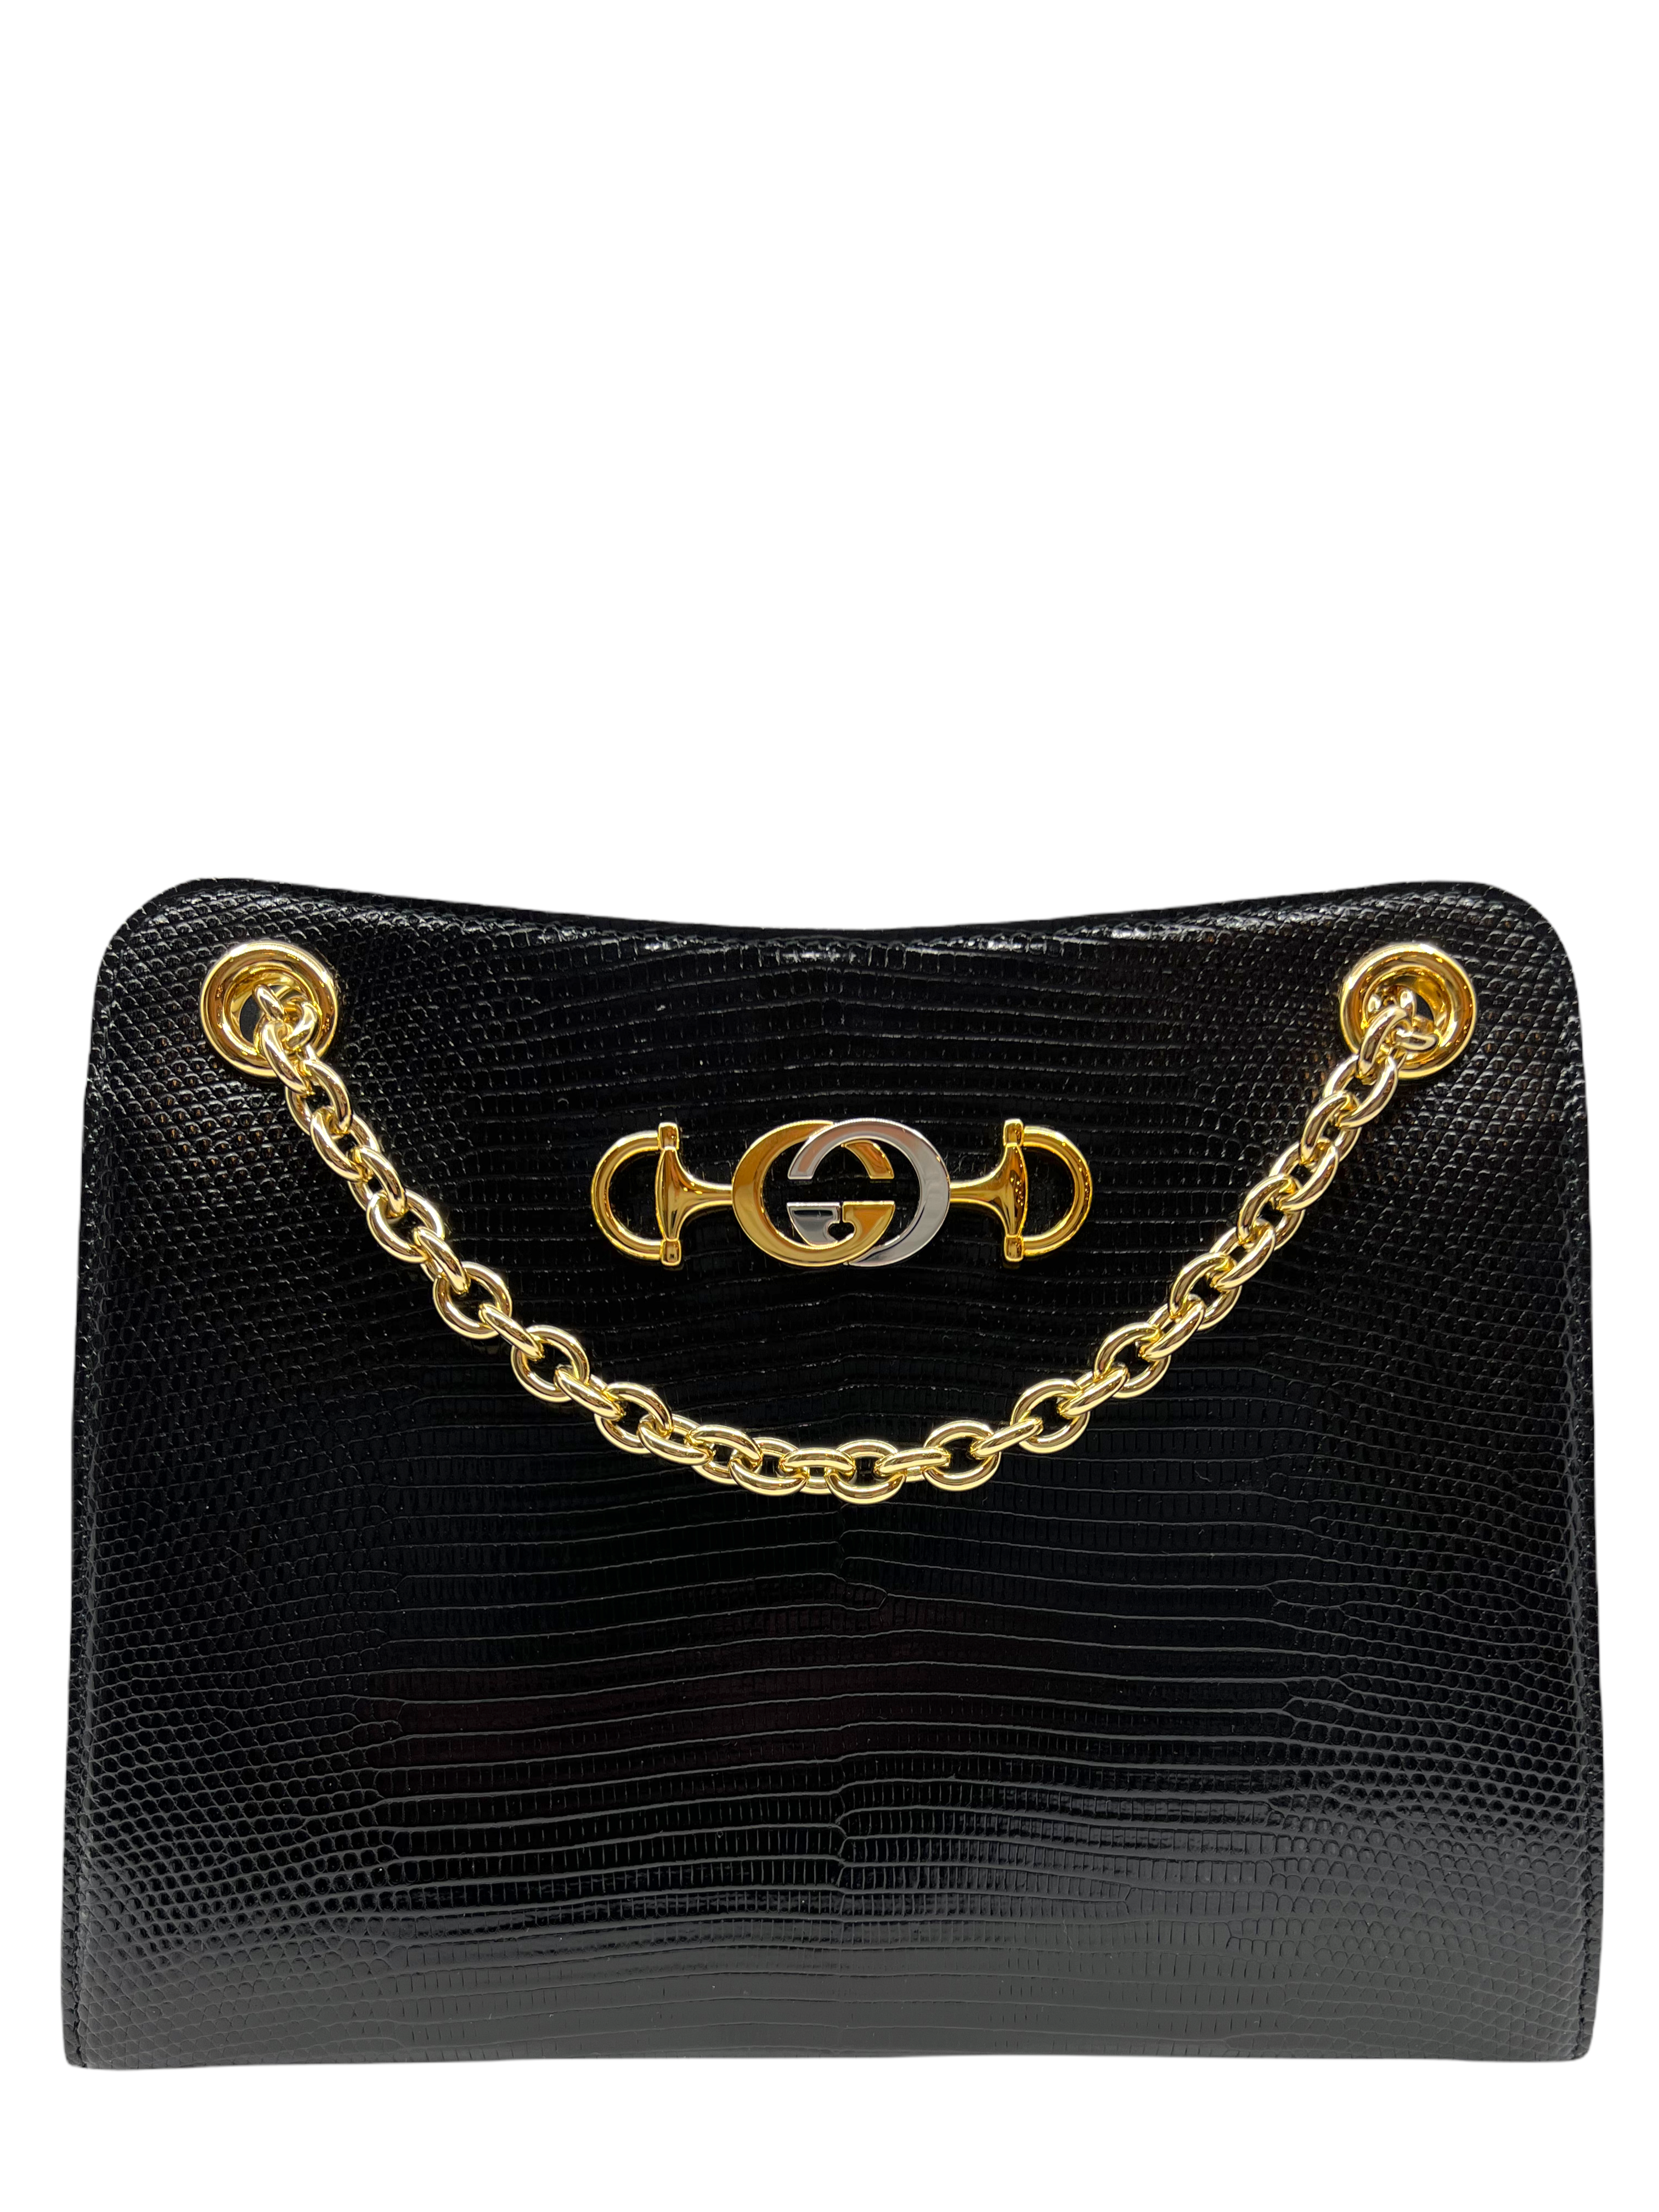 Gucci Diana lizard mini bag in black